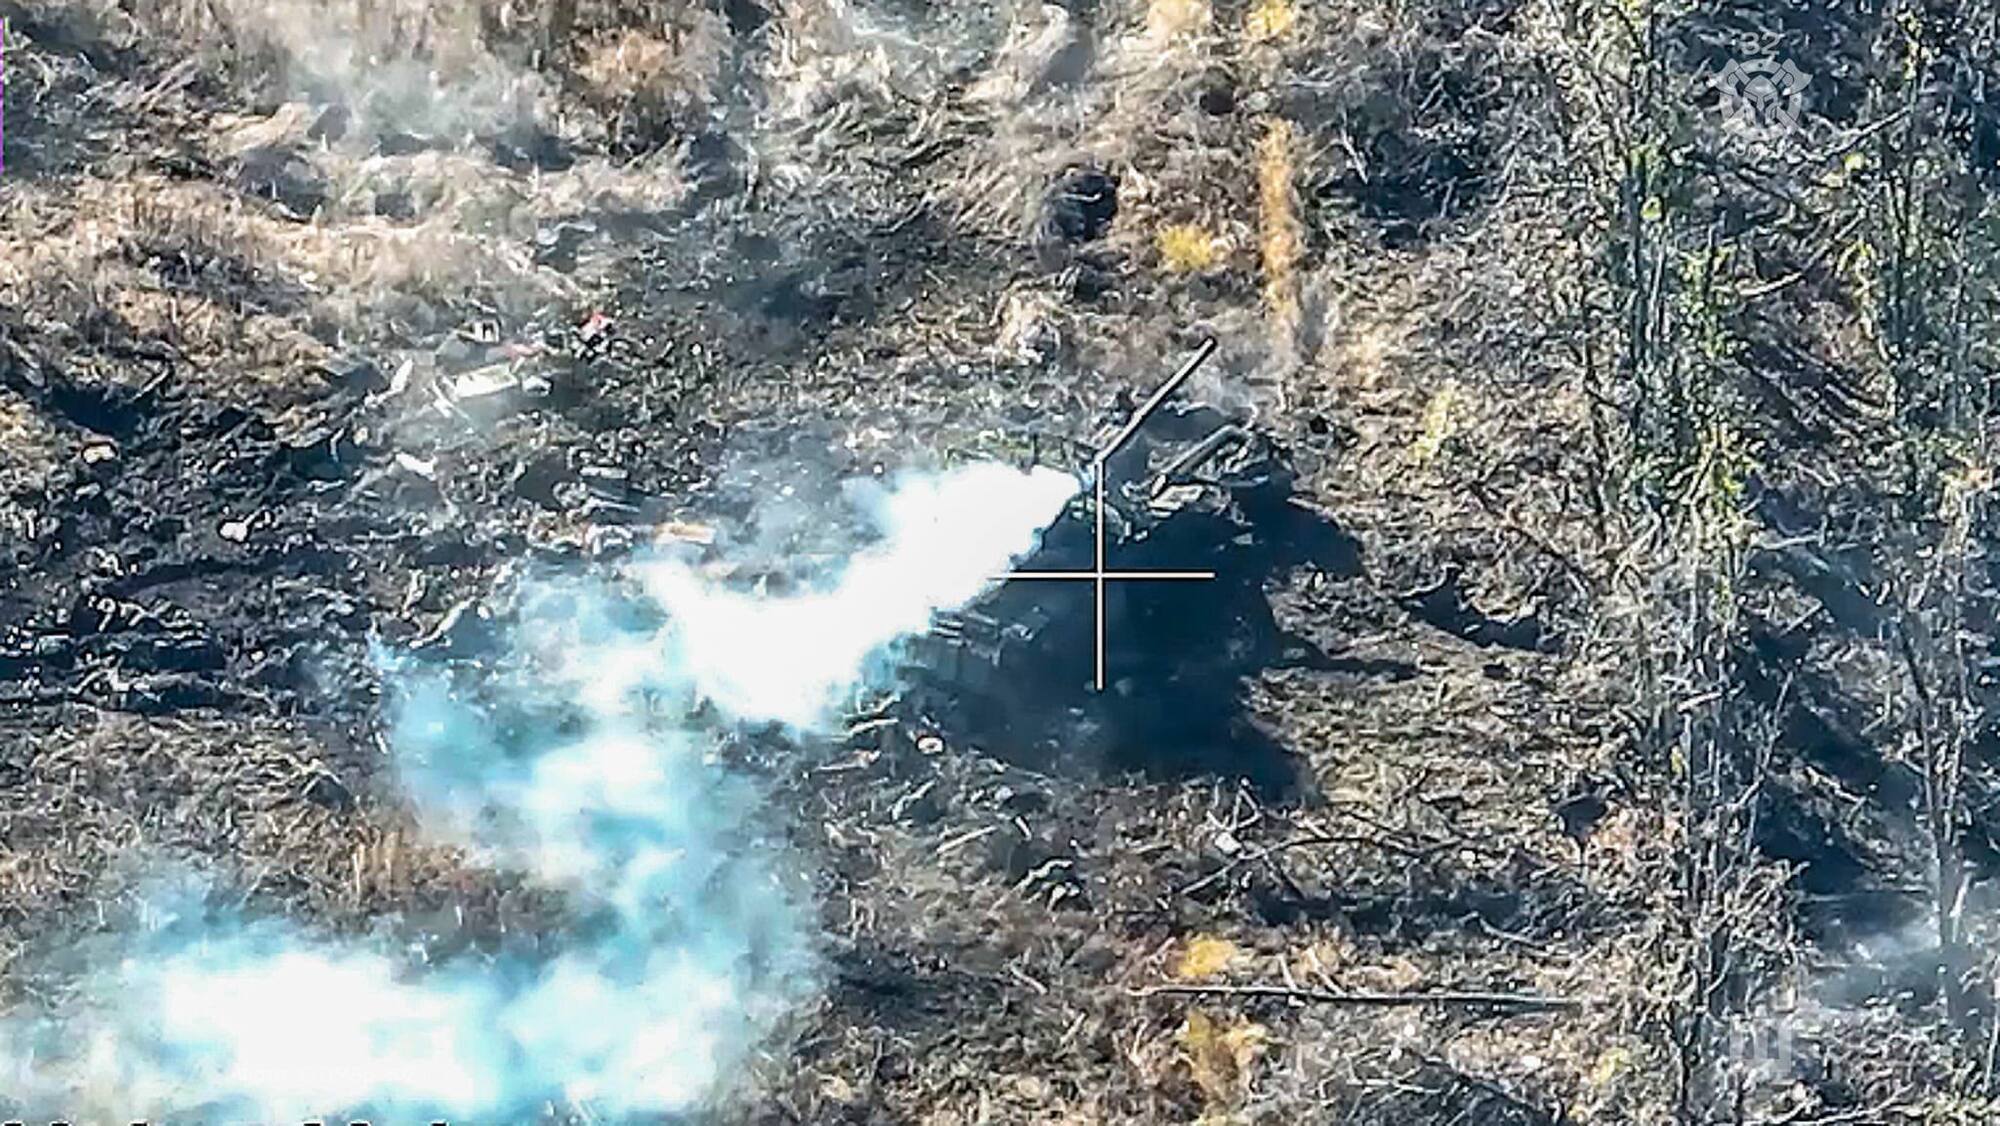 Українські воїни знищили "гордість ворожого оборонпрому" з ручного гранатомета: танк згорів разом із екіпажем. Фото